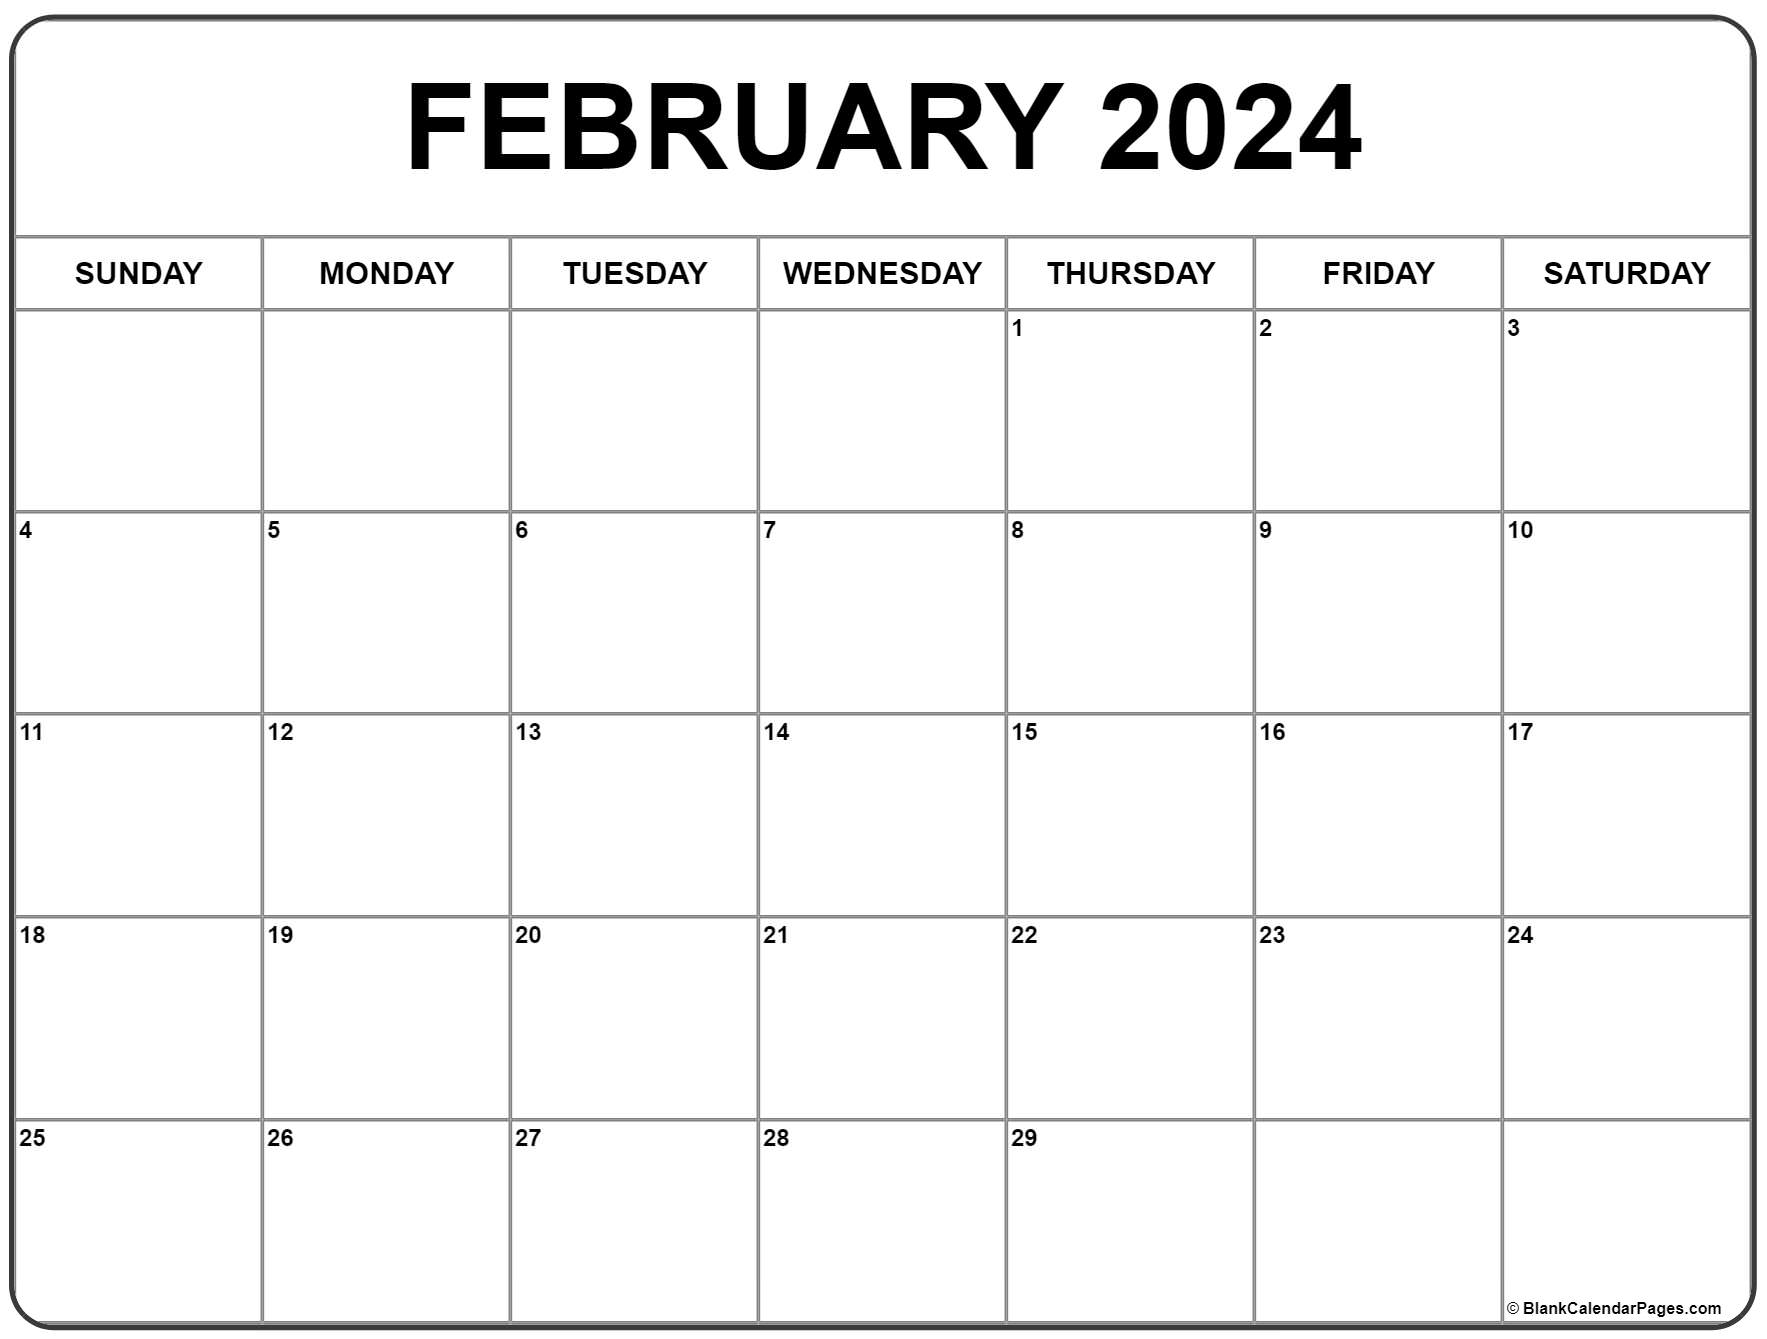 February 2024 Calendar | Free Printable Calendar for A-Printable-Calendar February 2024